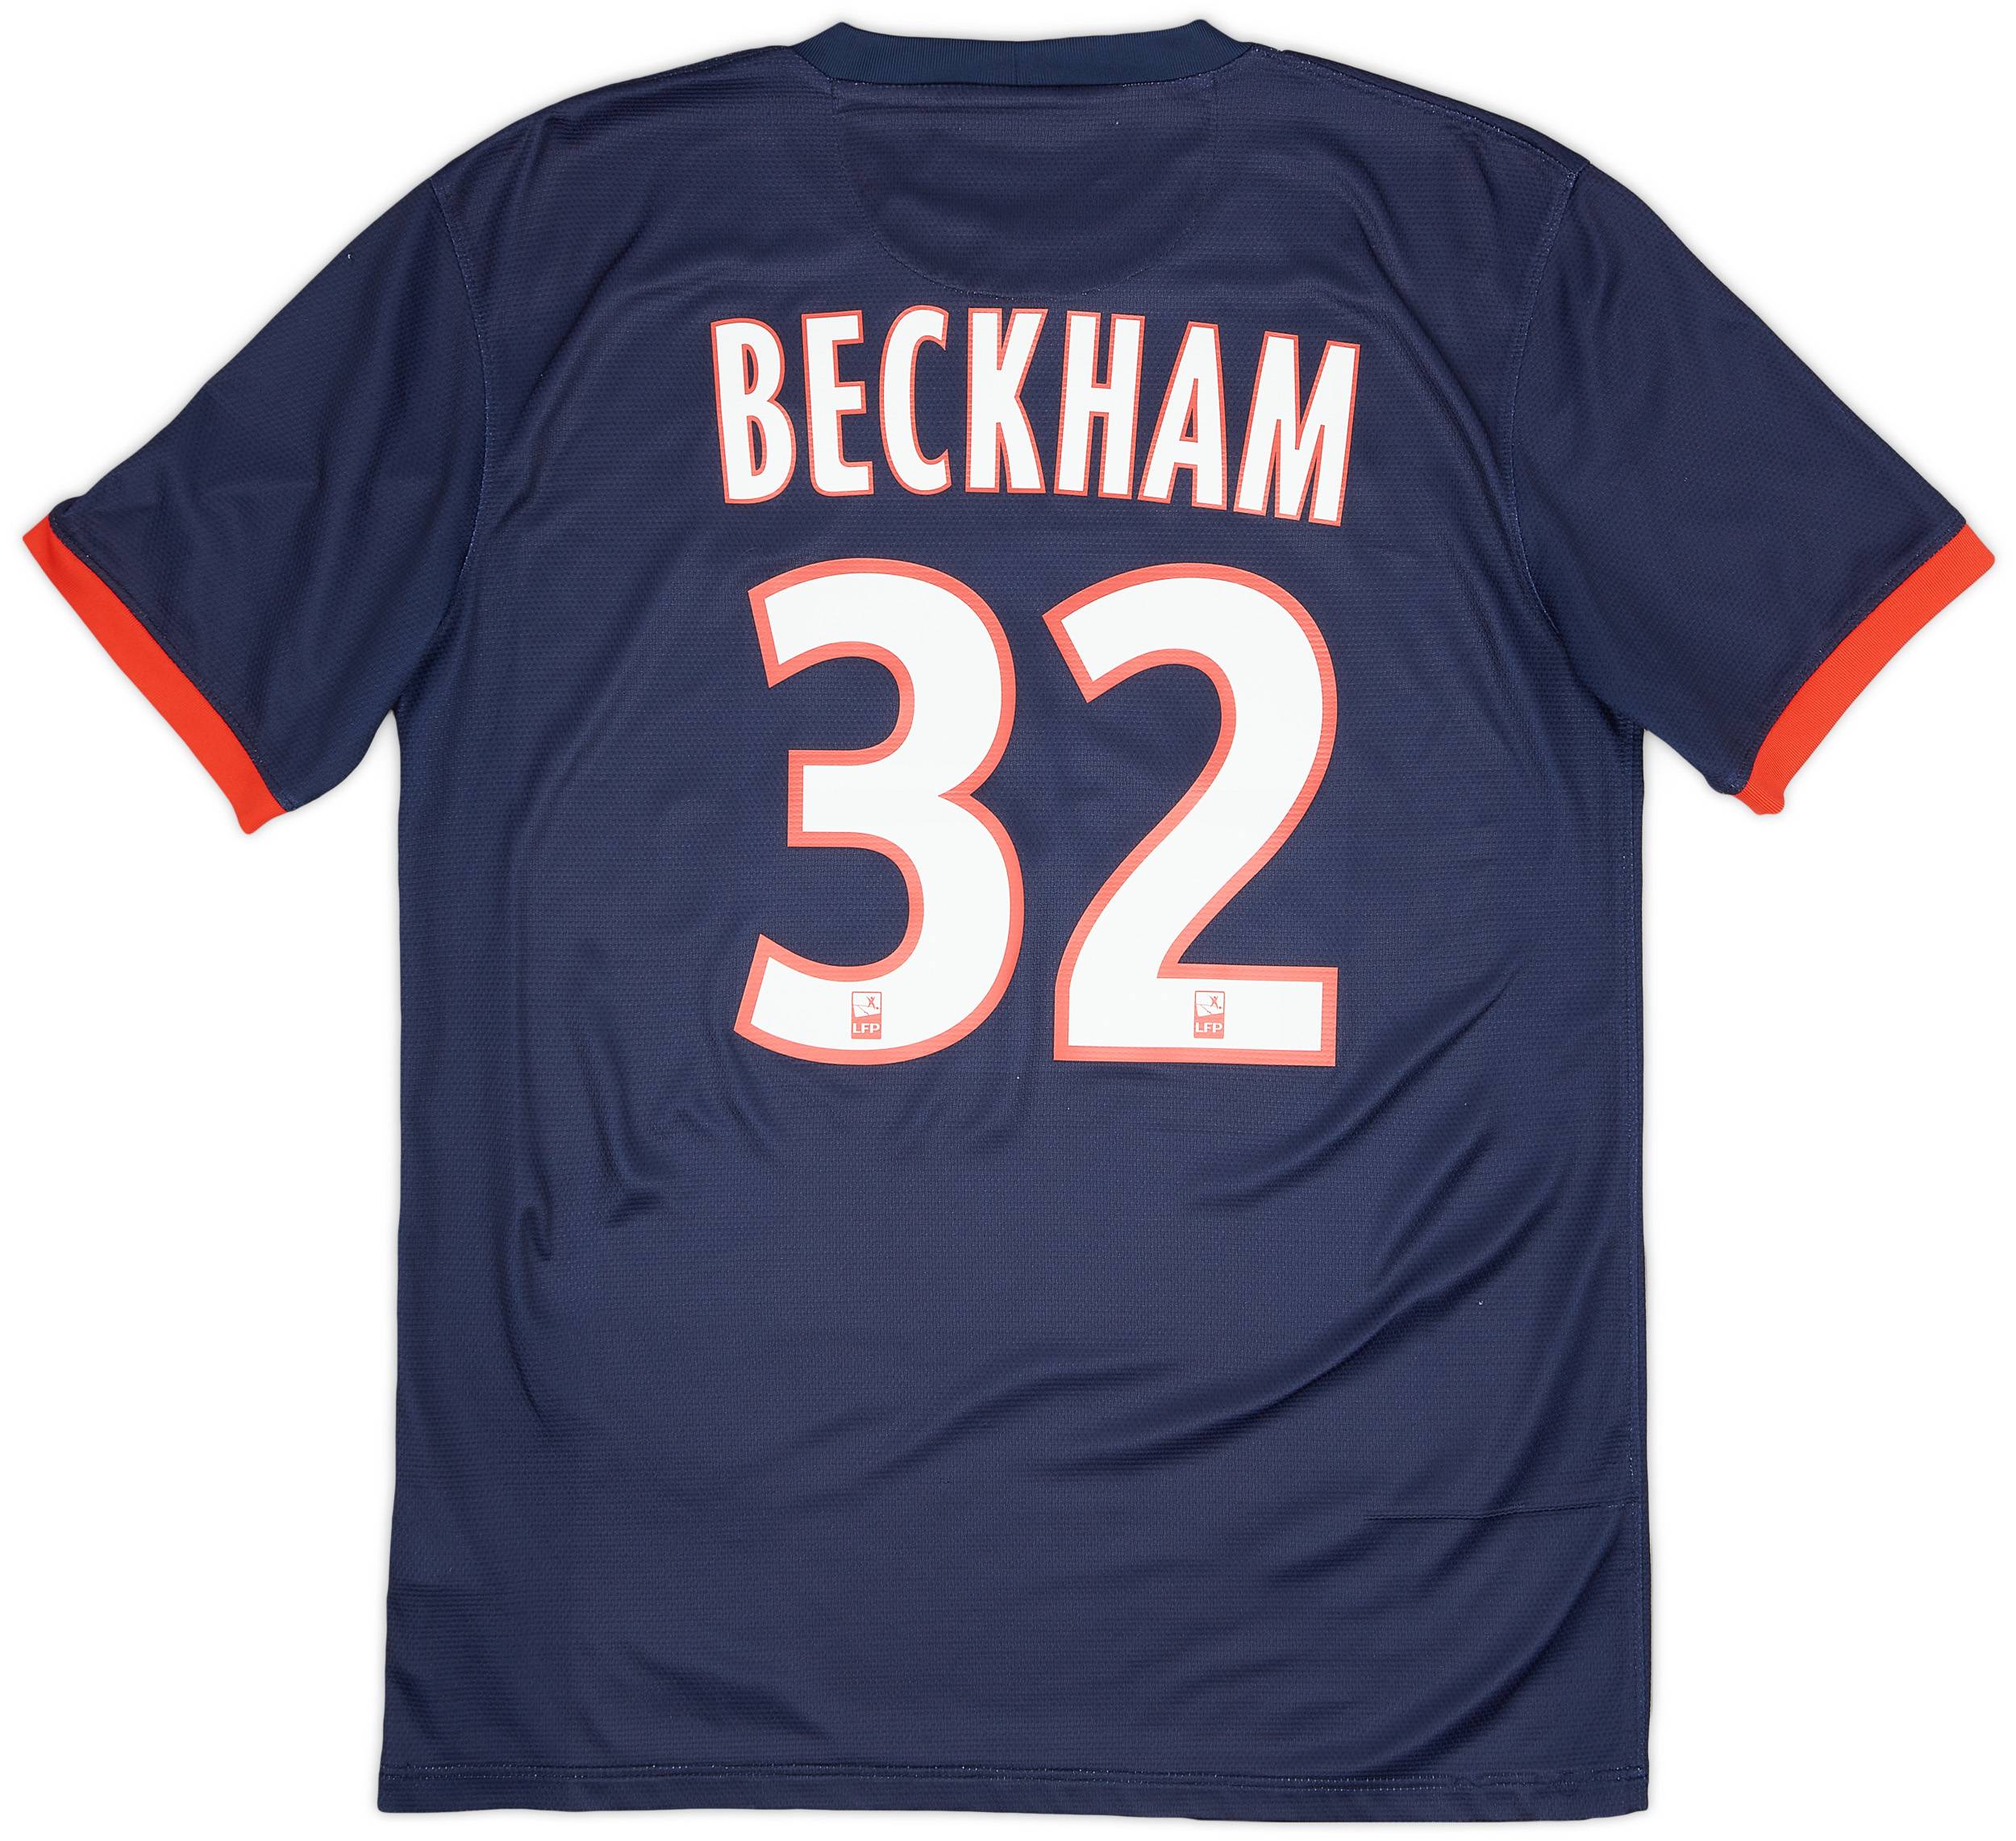 2013-14 Paris Saint-Germain Home Shirt Beckham #32 - 8/10 - (M)